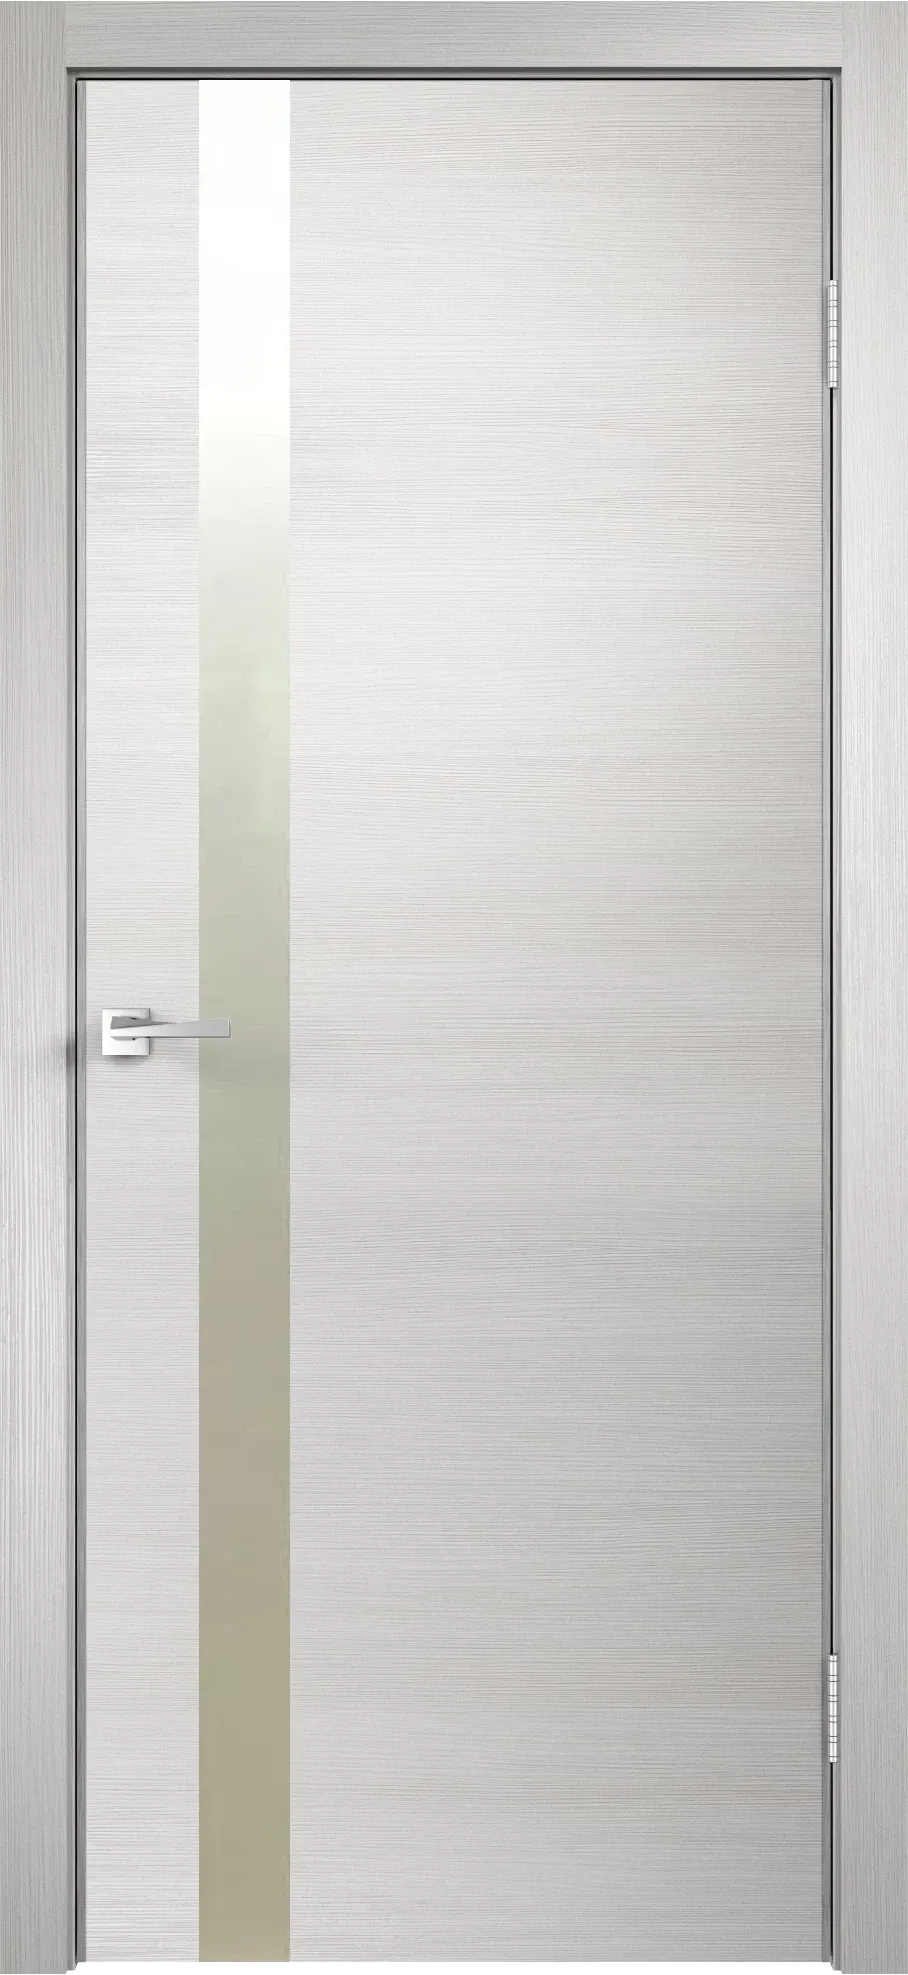 Velldoris межкомнатная дверь экошпон techno облегченное z1 дуб белый поперечный 900Х2000